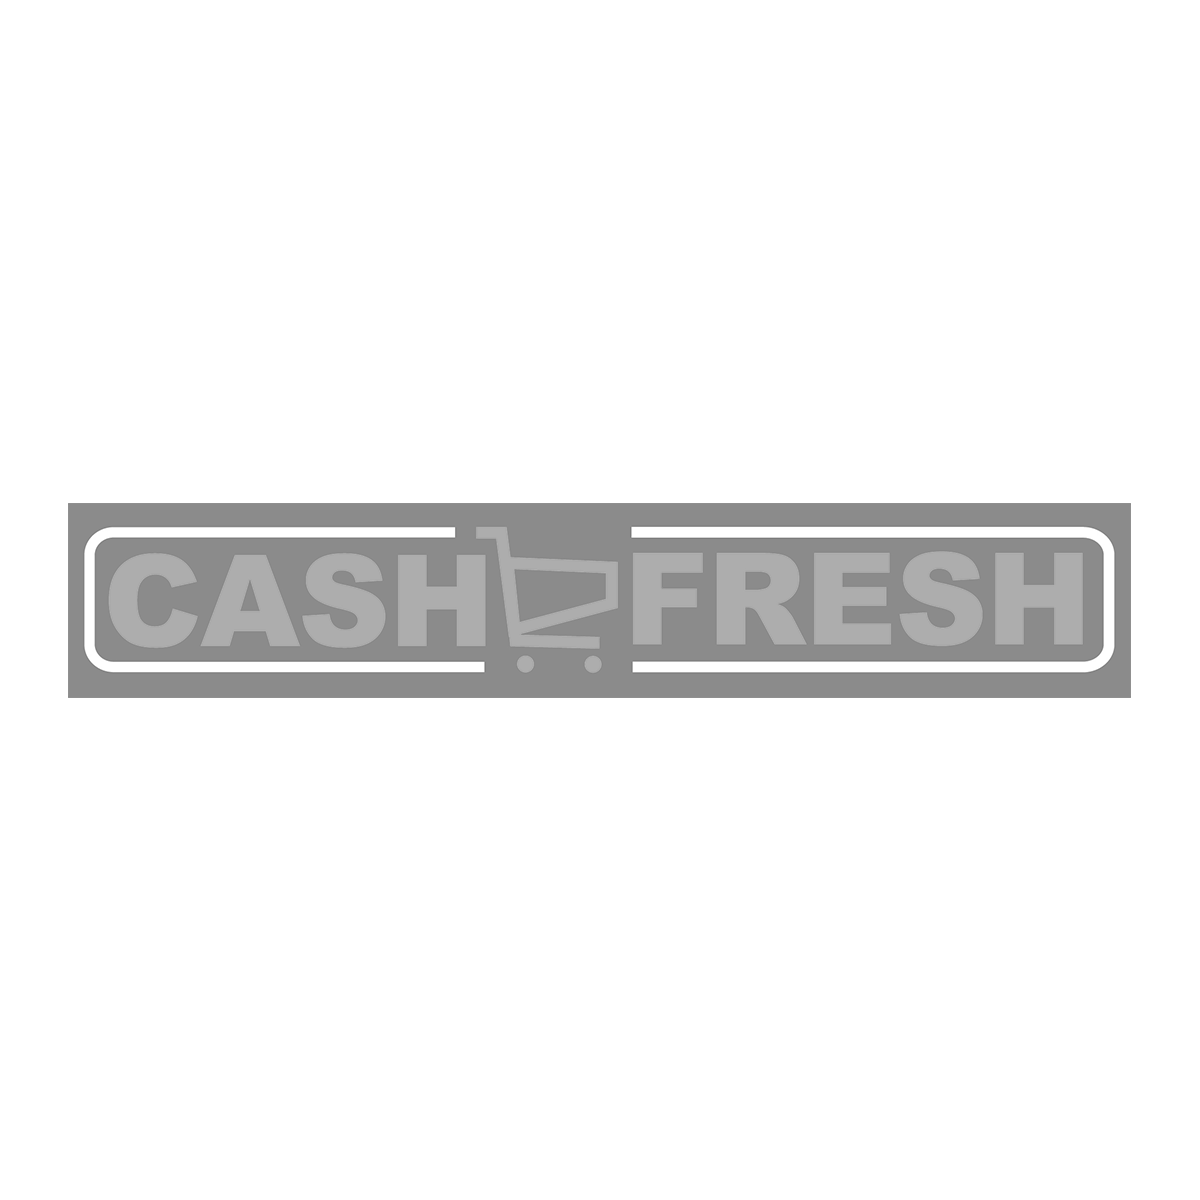 logo cash fresh